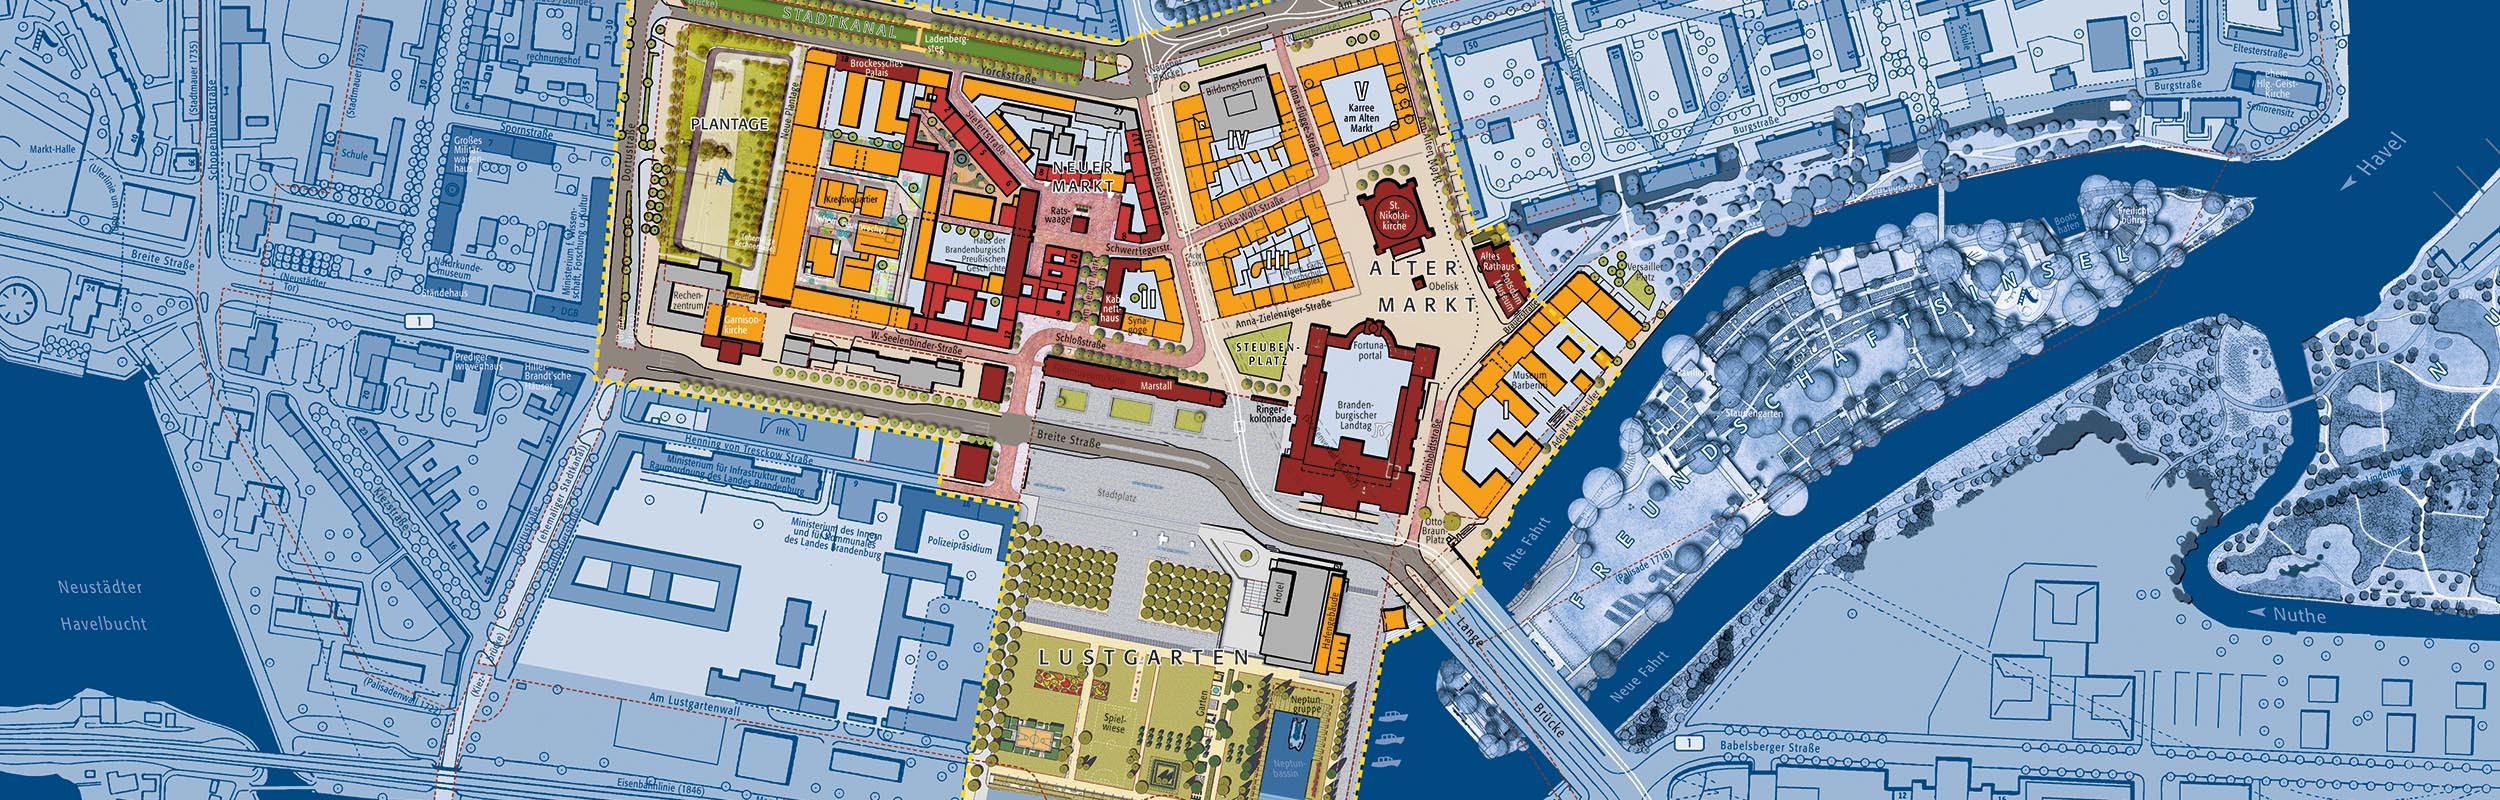 Grafik: Städtebaulicher Lageplan des Sanierungs-Gebietes in der Potsdamer Innenstadt. Es sind Maßnahmen dargestellt, die im Zeitraum der Sanierung umgesetzt werden sollen.